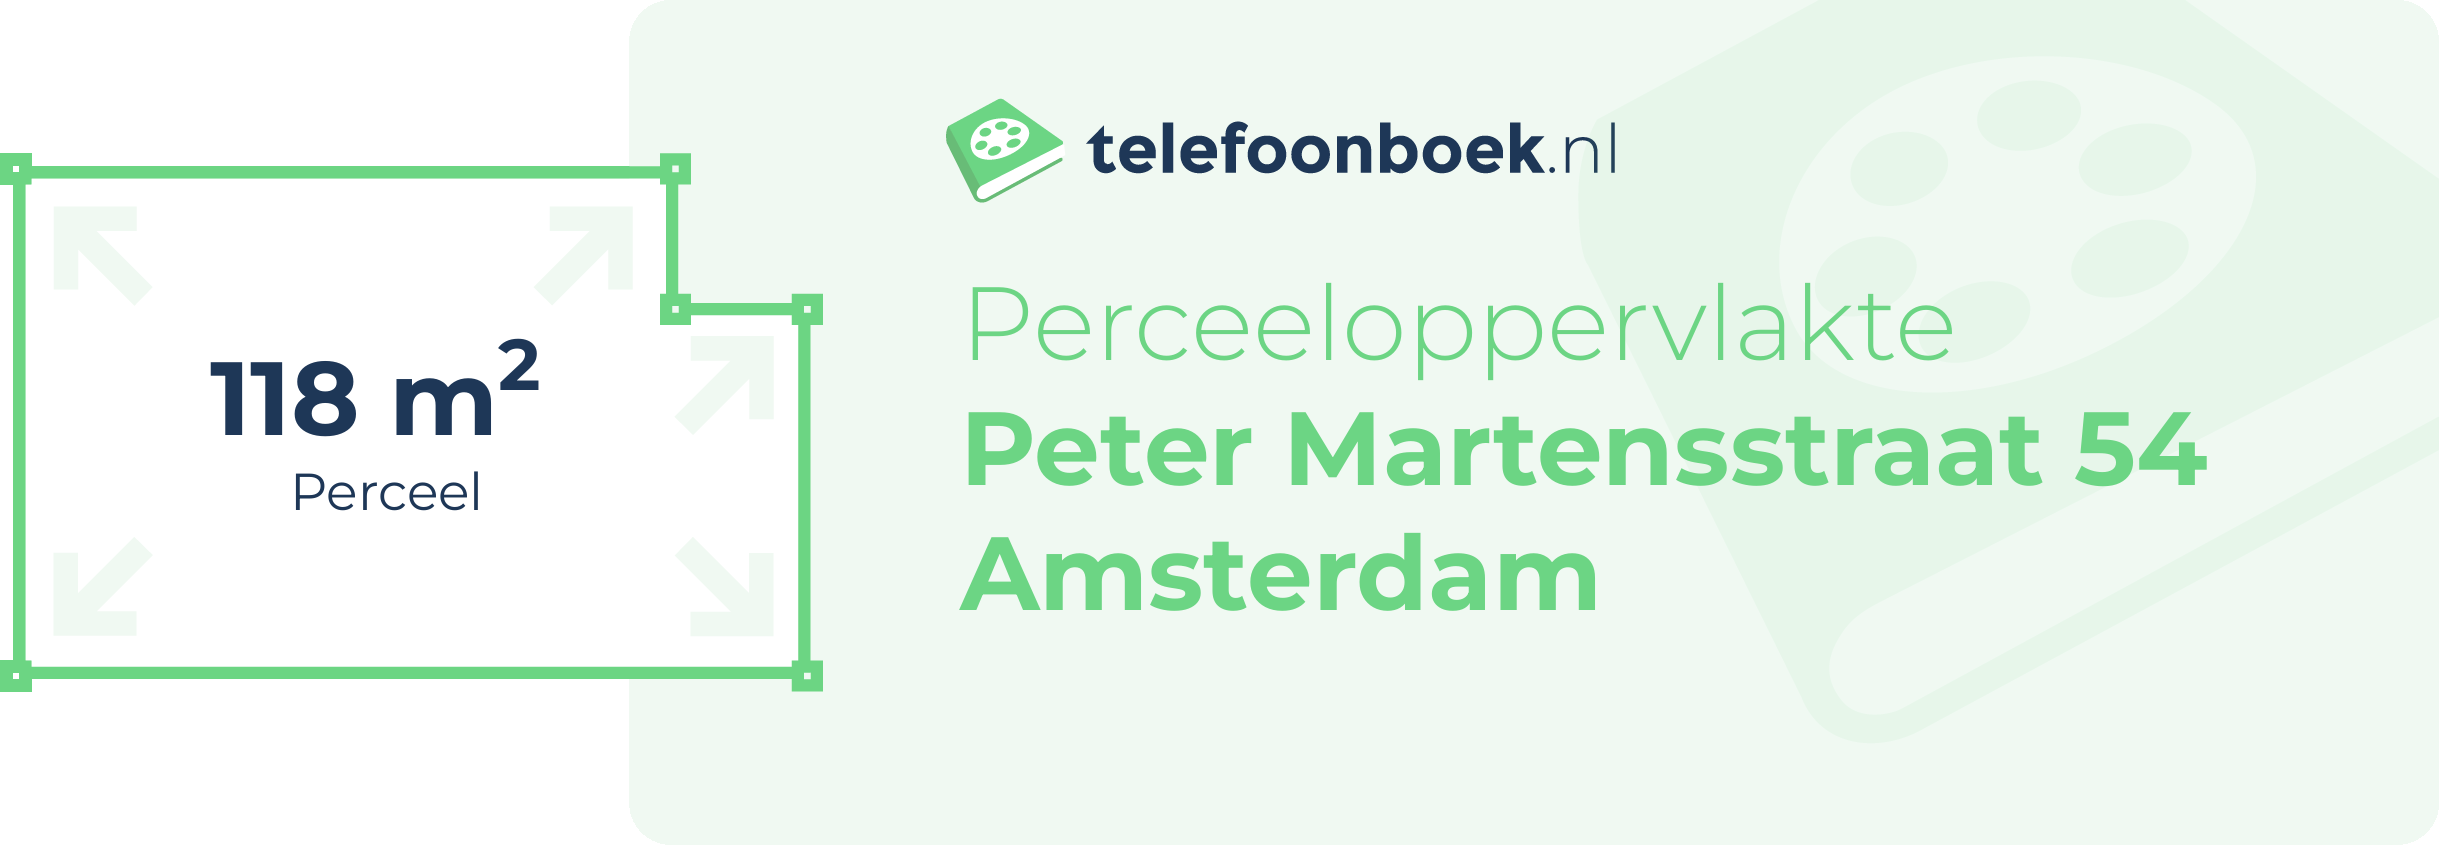 Perceeloppervlakte Peter Martensstraat 54 Amsterdam